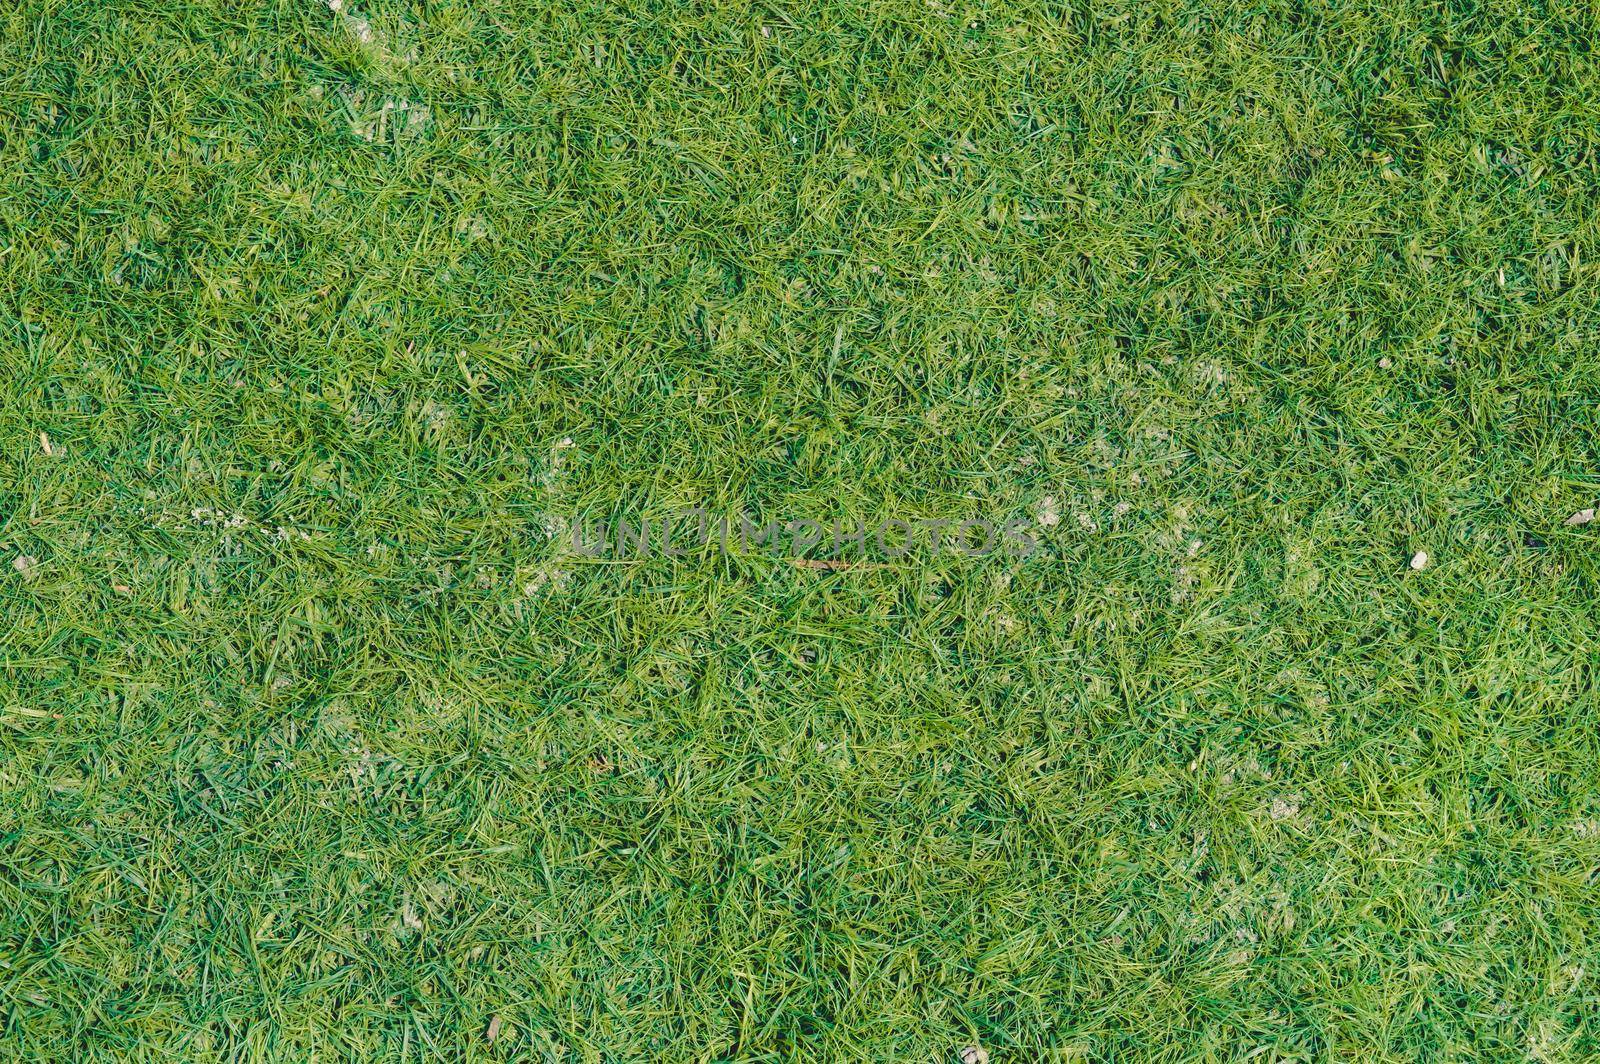 Green grass background. Full frame. Stock photo